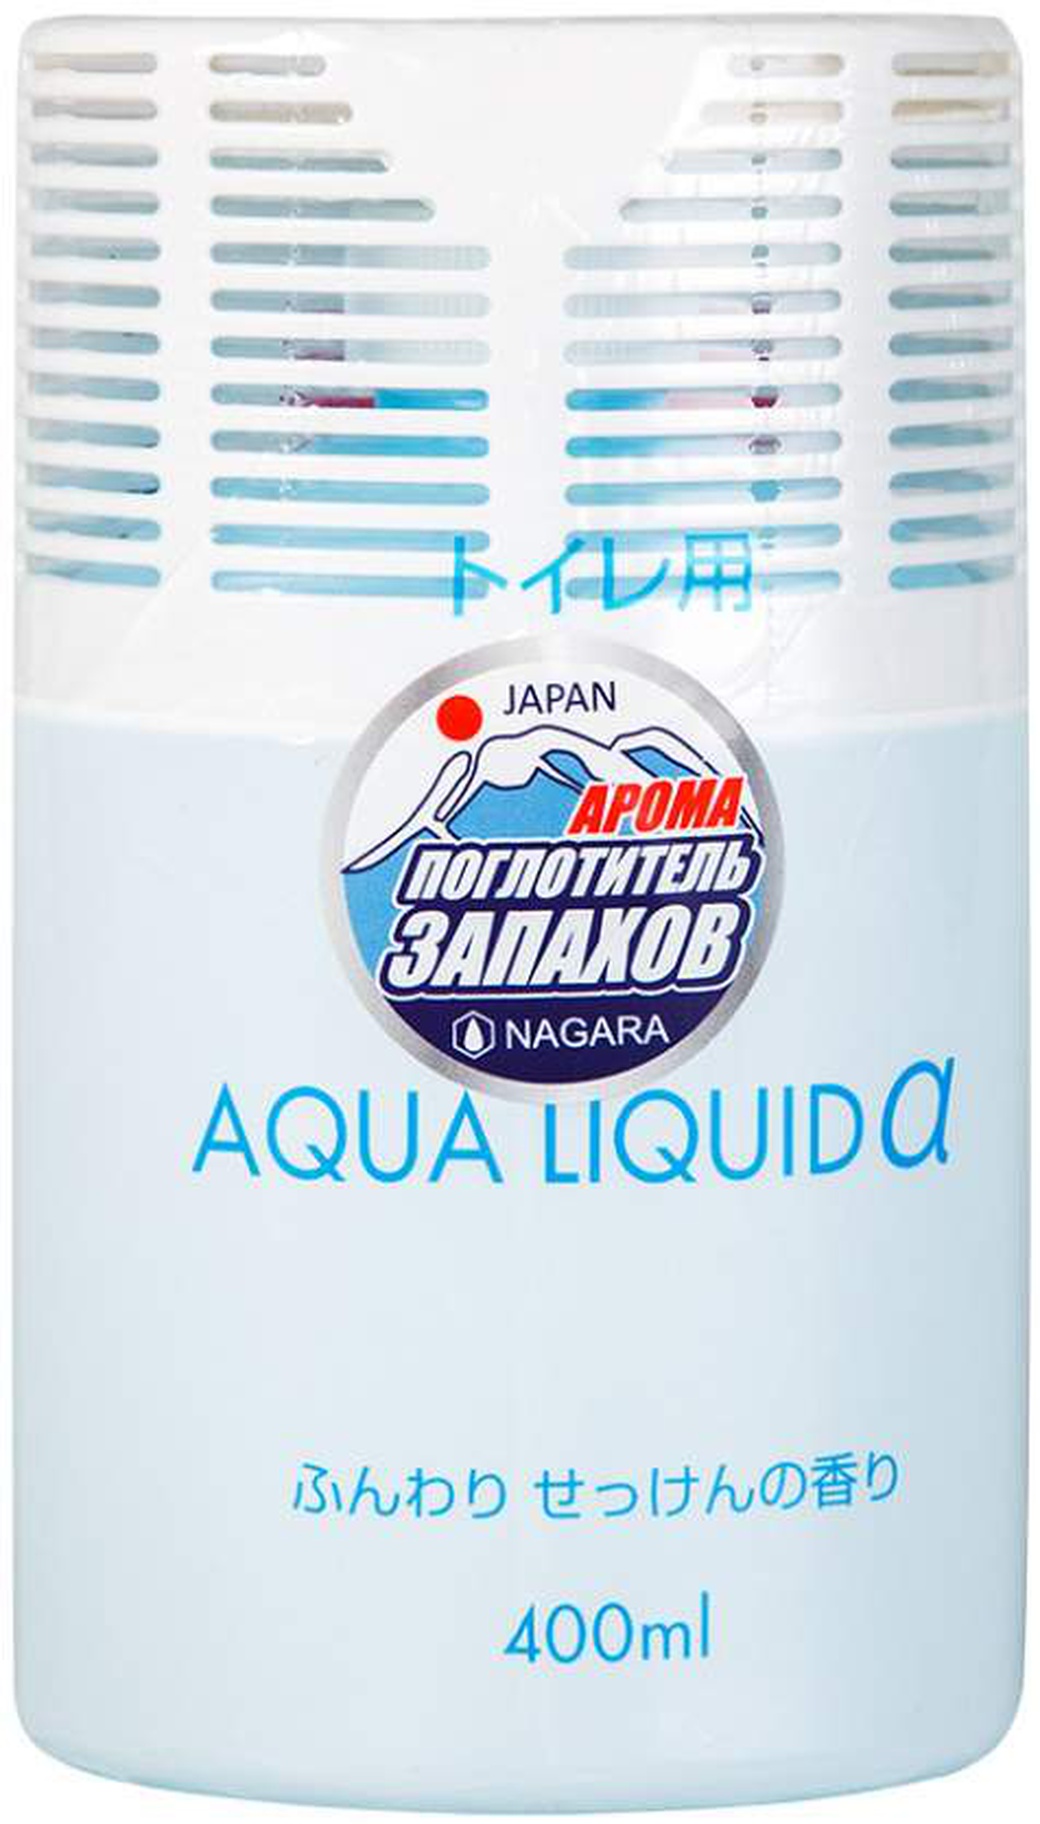 Арома-поглотитель запахов Nagara Aqua liquid Мыло для туалета 400 мл фото